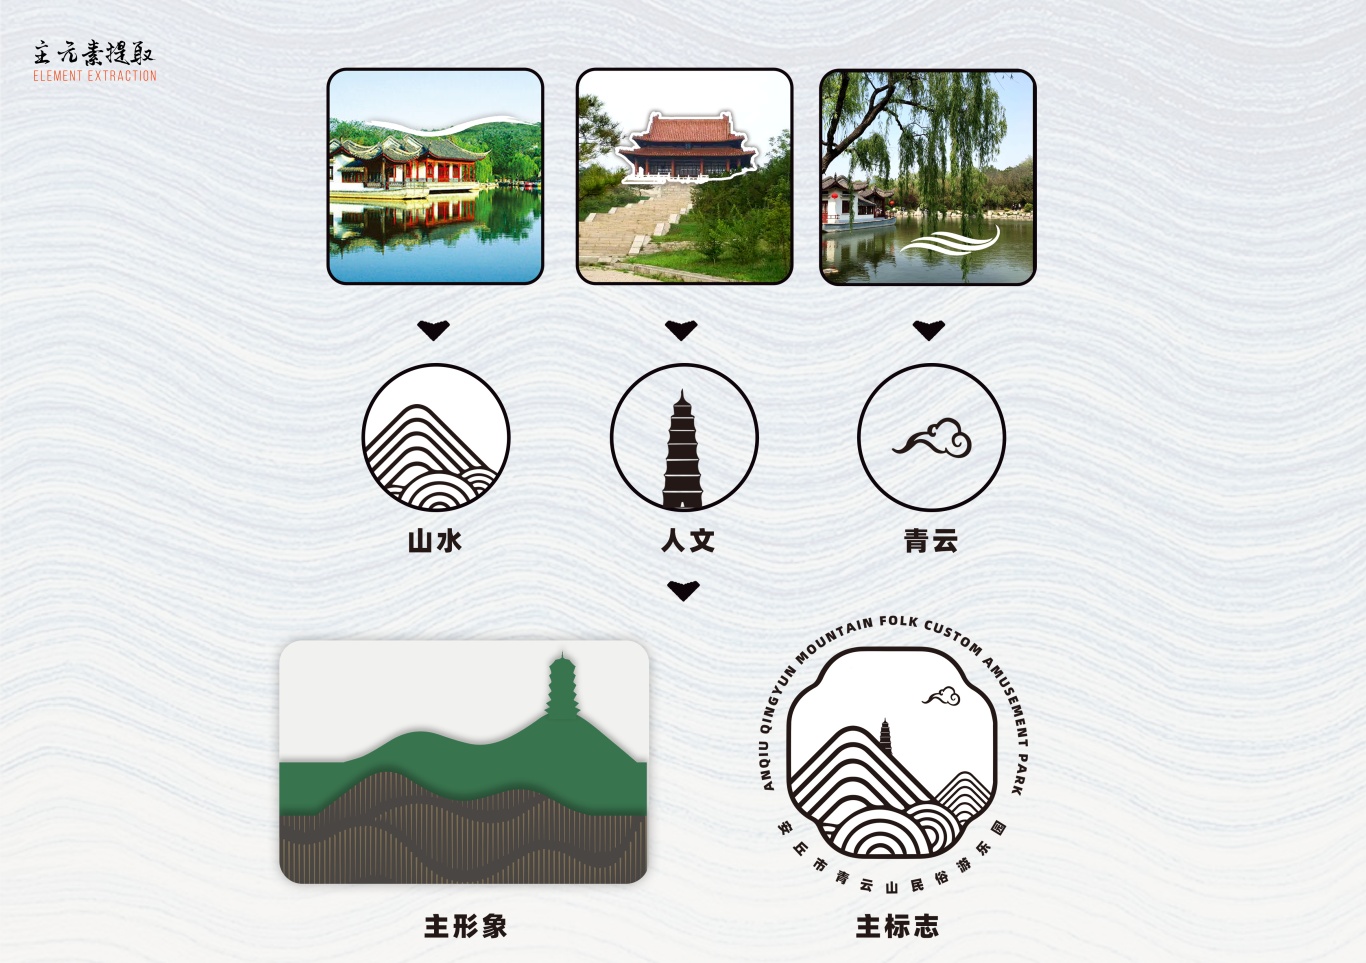 山東·濰坊 安丘青云山景區旅游導視系統圖1